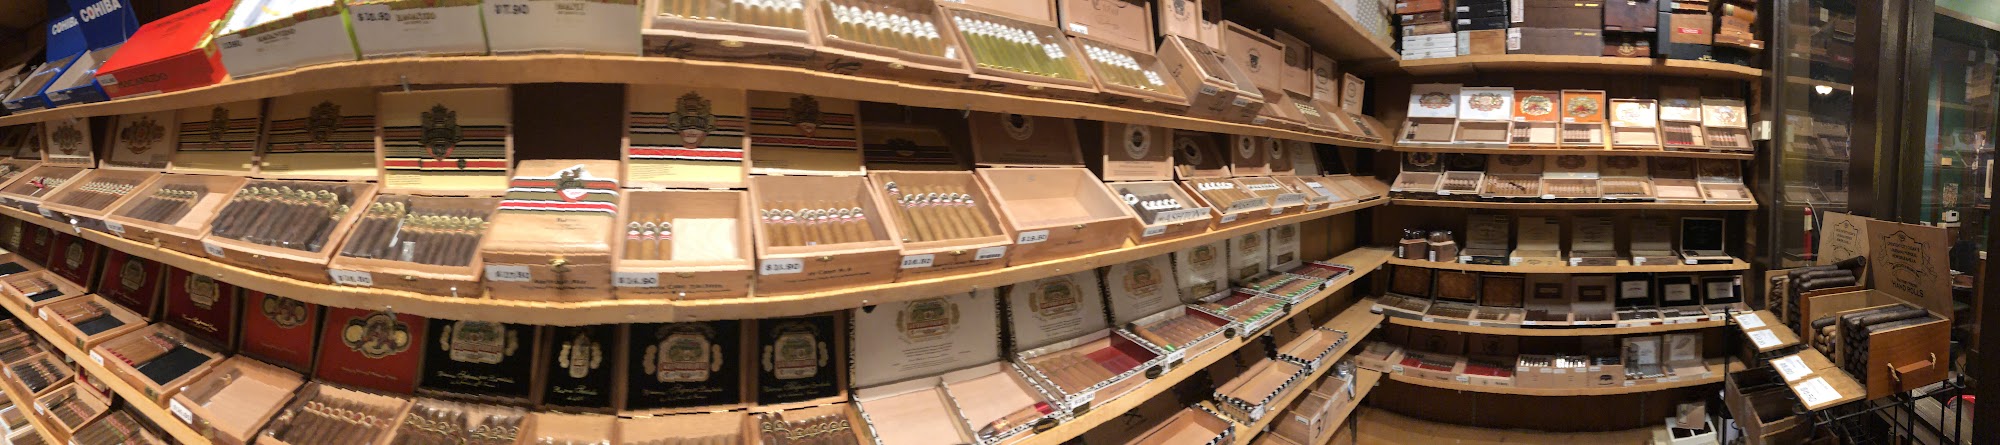 Crescent City Cigar Shop Inc